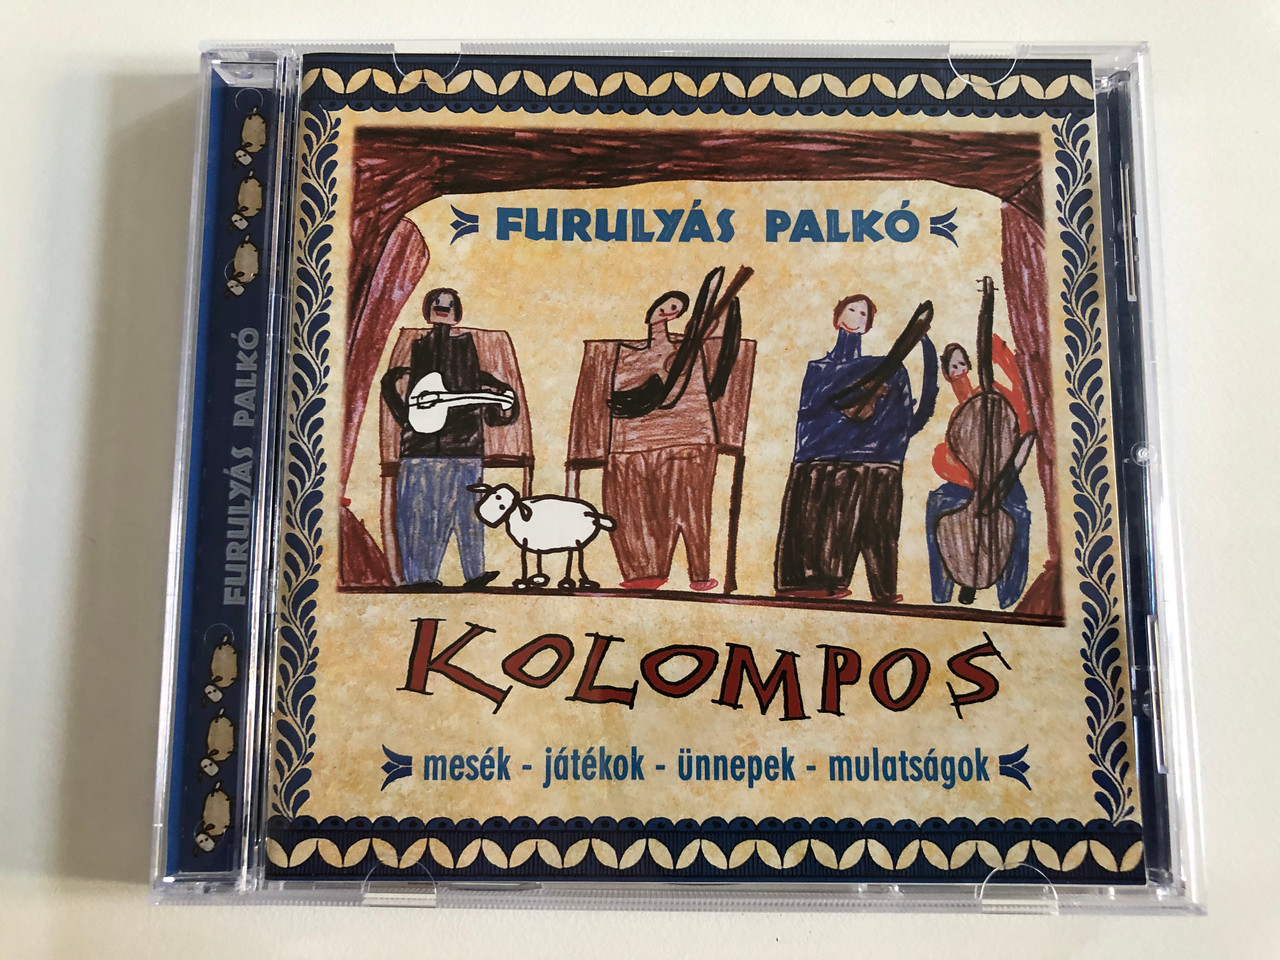 Furulyás Palkó - Kolompos (Mesék – Játékok – ünnepek – Mulatságok) / Fonó  Records Audio CD 2002 / FA-907-2 - bibleinmylanguage